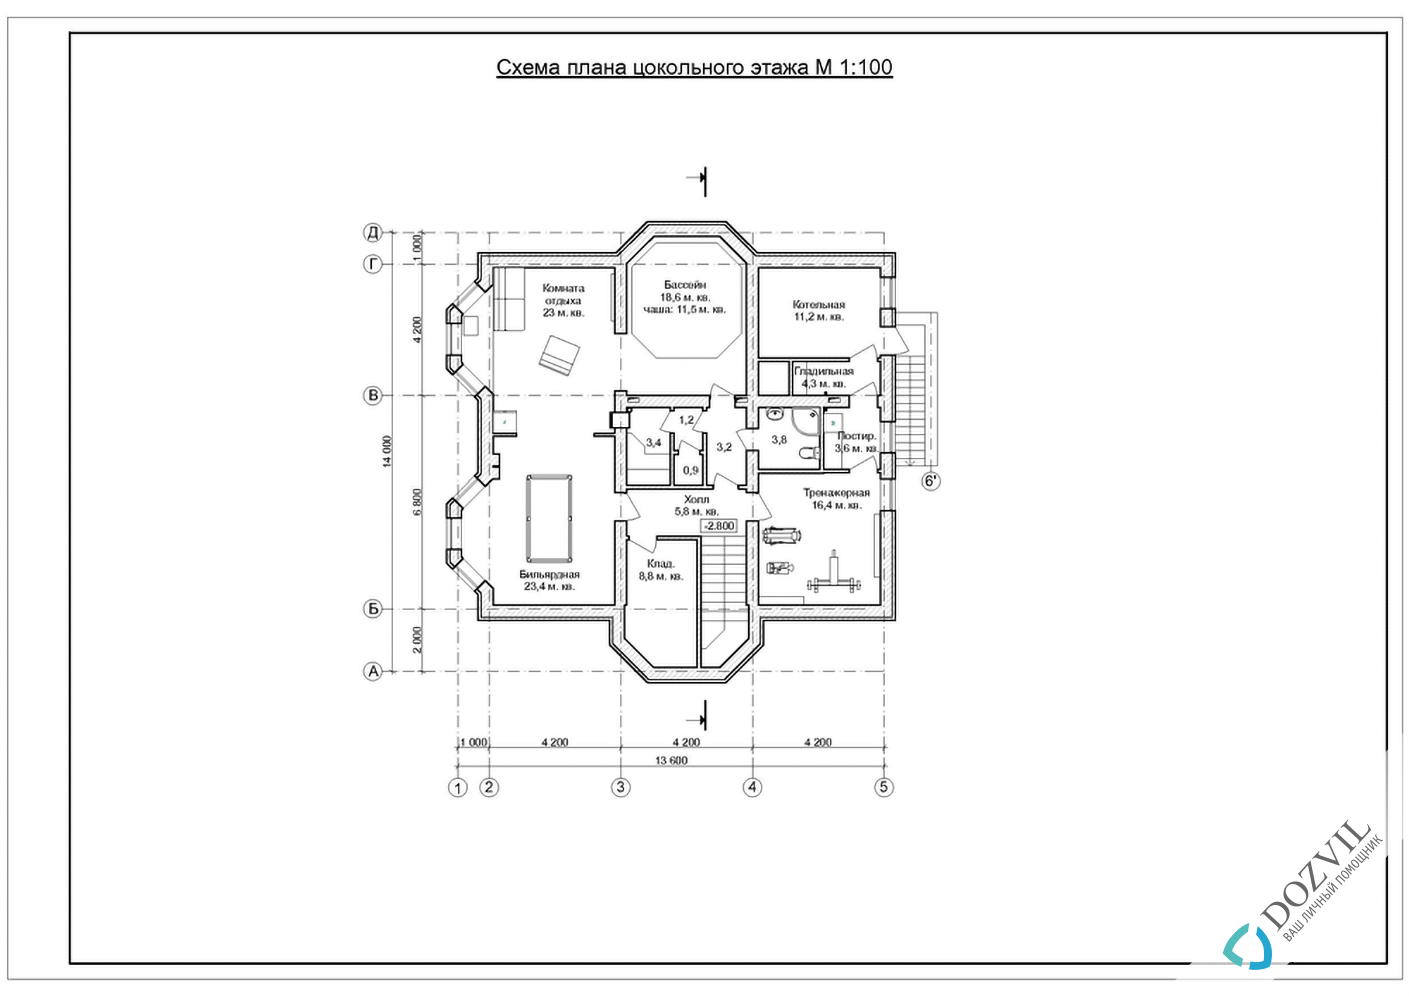 Разрешение на строительство дома> Дома с общей площадью до 500 квадратных метров, которые только планируют строить или построили самовольно после 09 апреля 2015 года. > 2 этап - Разработка эскиза намерений строительства.